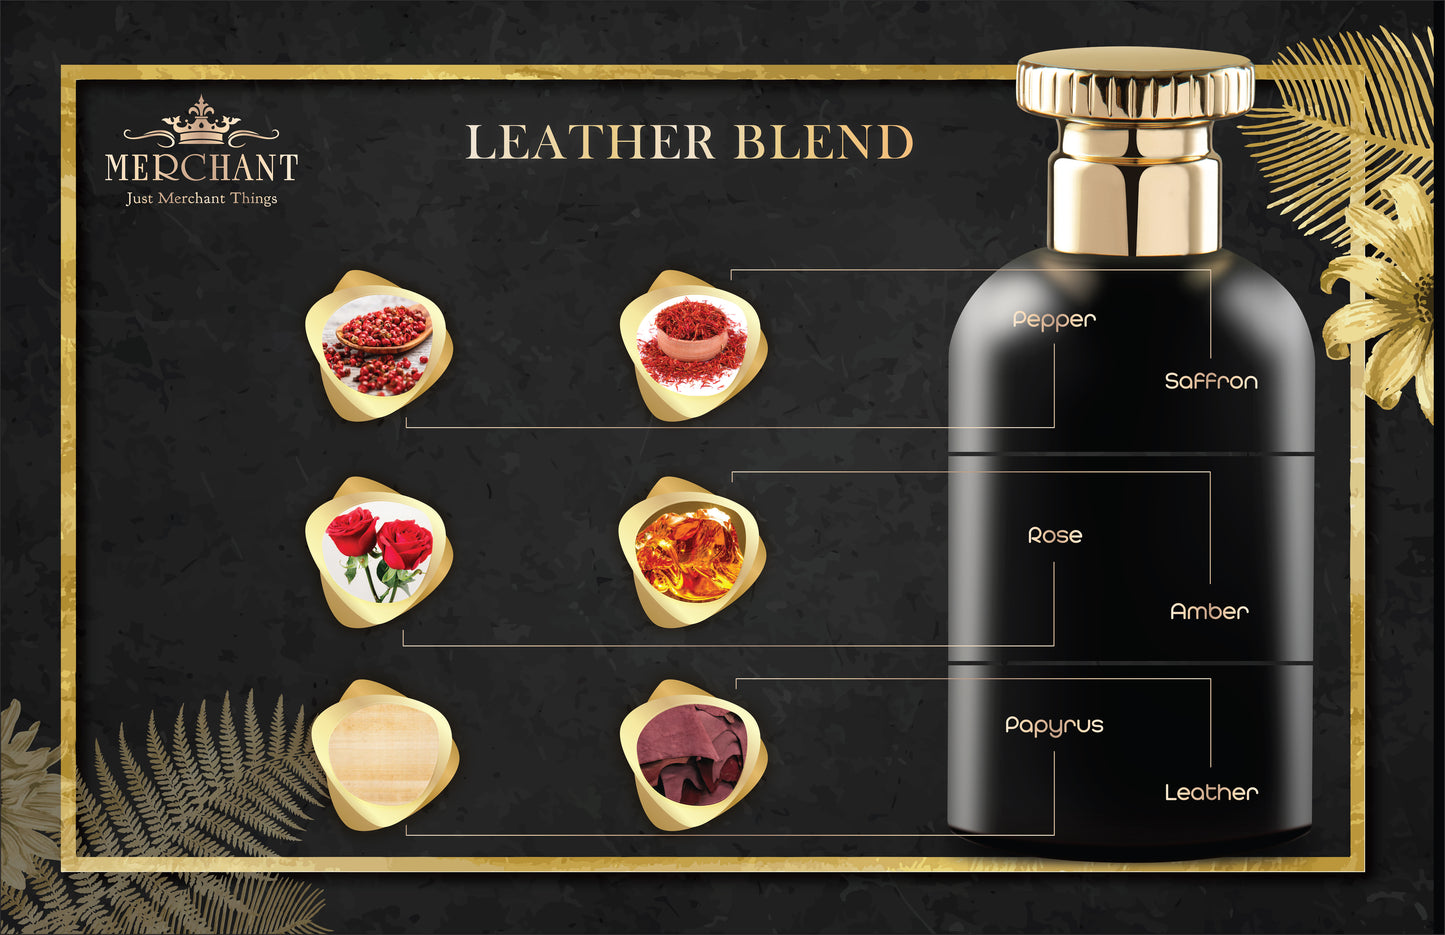 Merchant Leather Blend | Eau De Parfum | Unisex Perfume | 100 ml